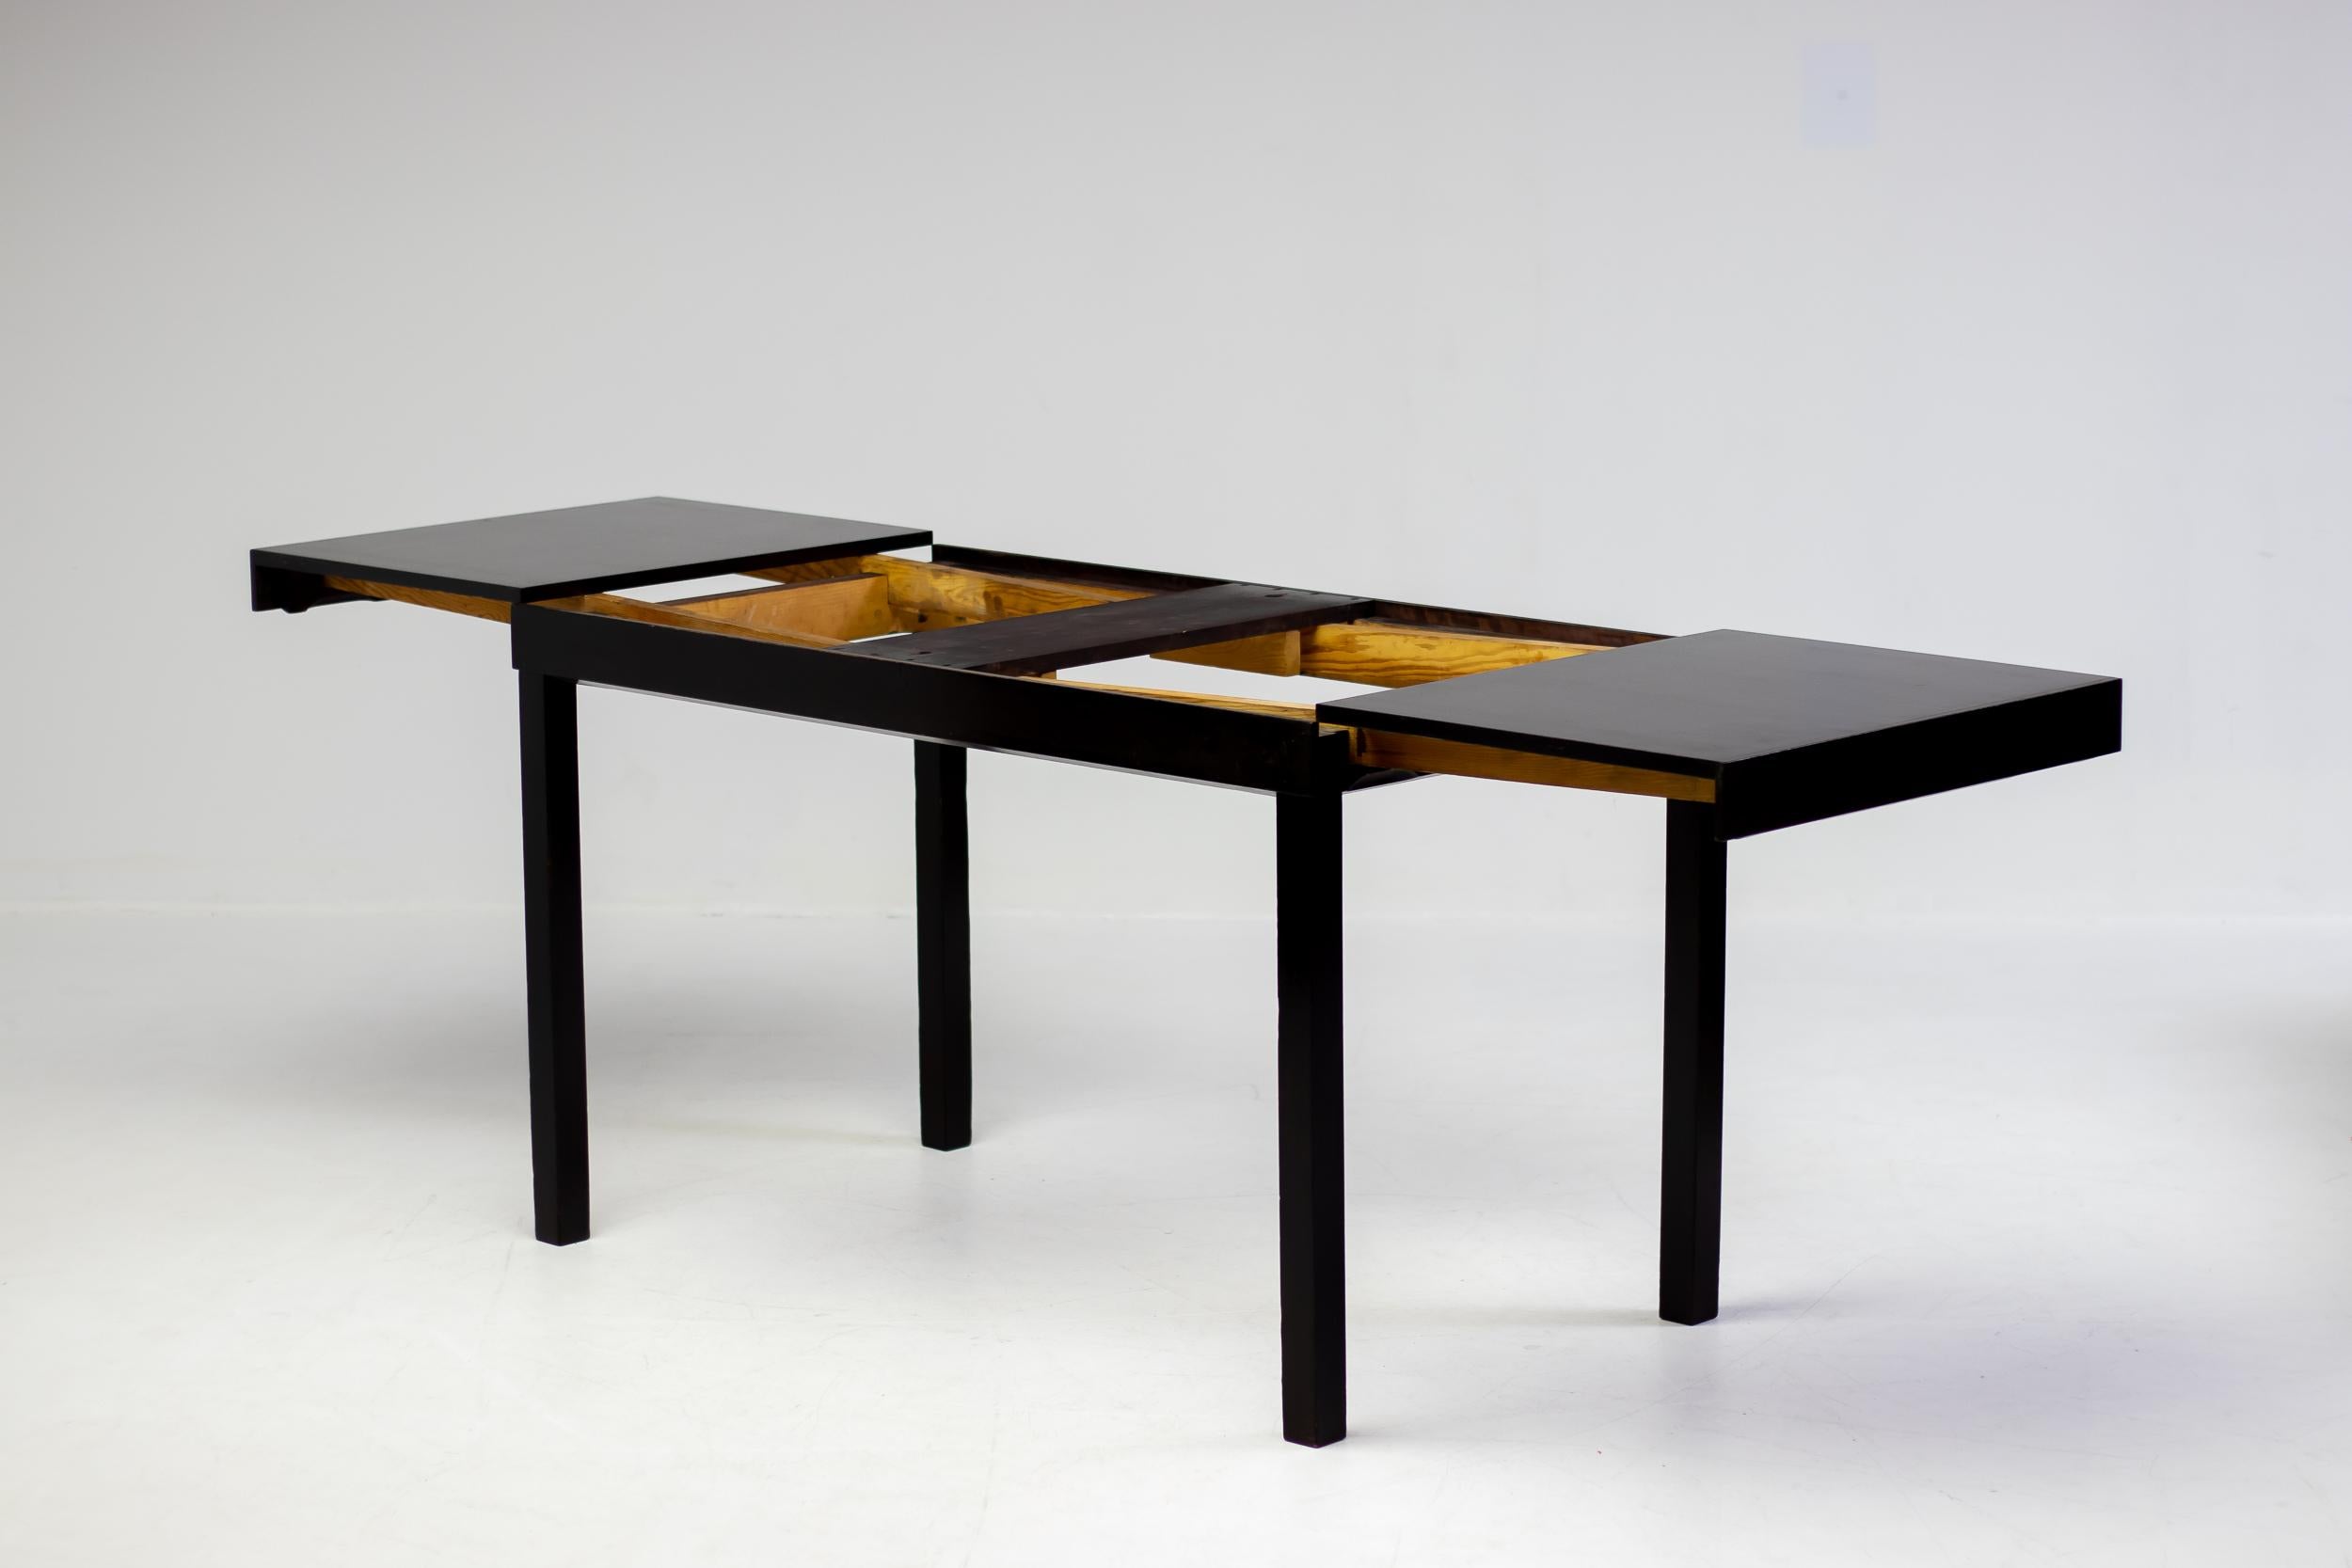 Dieser schöne skandinavisch-moderne ausziehbare Esstisch oder Schreibtisch wurde in den 1930er Jahren von Axel Einar Hjorth für NK entworfen.  Der Sockel und die Verlängerungsblätter sind in einer wunderschönen, sehr dunkelbraunen Schokoladenfarbe